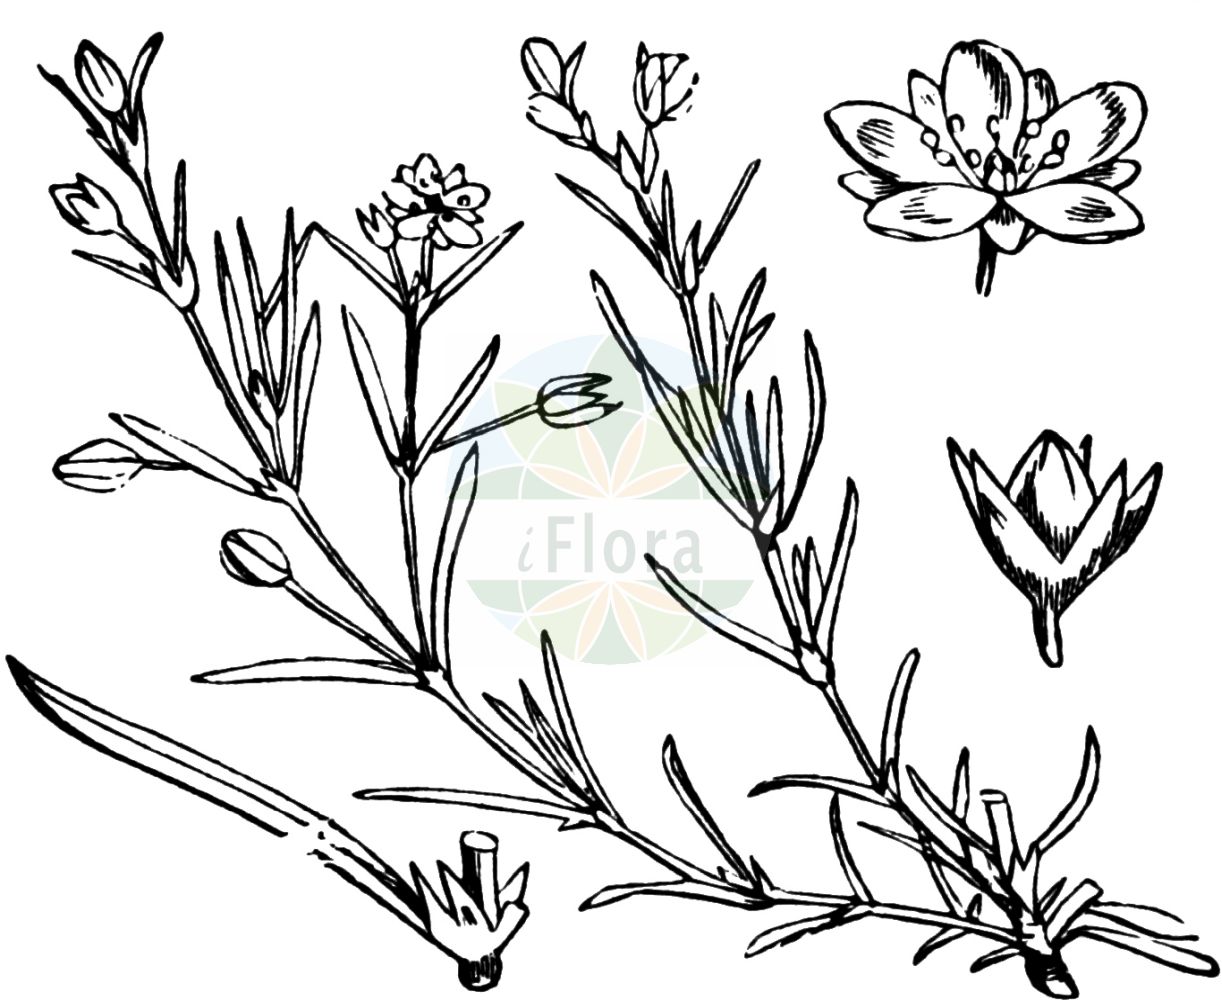 Historische Abbildung von Spergularia rubra (Rote Schuppenmiere - Sand Spurrey). Das Bild zeigt Blatt, Bluete, Frucht und Same. ---- Historical Drawing of Spergularia rubra (Rote Schuppenmiere - Sand Spurrey). The image is showing leaf, flower, fruit and seed.(Spergularia rubra,Rote Schuppenmiere,Sand Spurrey,Alsine rubra,Arenaria rubra,Spergula rubra,Spergularia arenosa,Spergularia catalaunica,Spergularia radicans,Spergularia rubra,Spergularia rubra var. alpina,Rote Schuppenmiere,Acker-Schuppenmiere,Roter Spoergel,Sand Spurrey,Red Sand Spurrey,Red Sandspurry,Spergularia,Schuppenmiere,Sandspurry,Caryophyllaceae,Nelkengewächse,Pink family,Blatt,Bluete,Frucht,Same,leaf,flower,fruit,seed,Fitch et al. (1880))